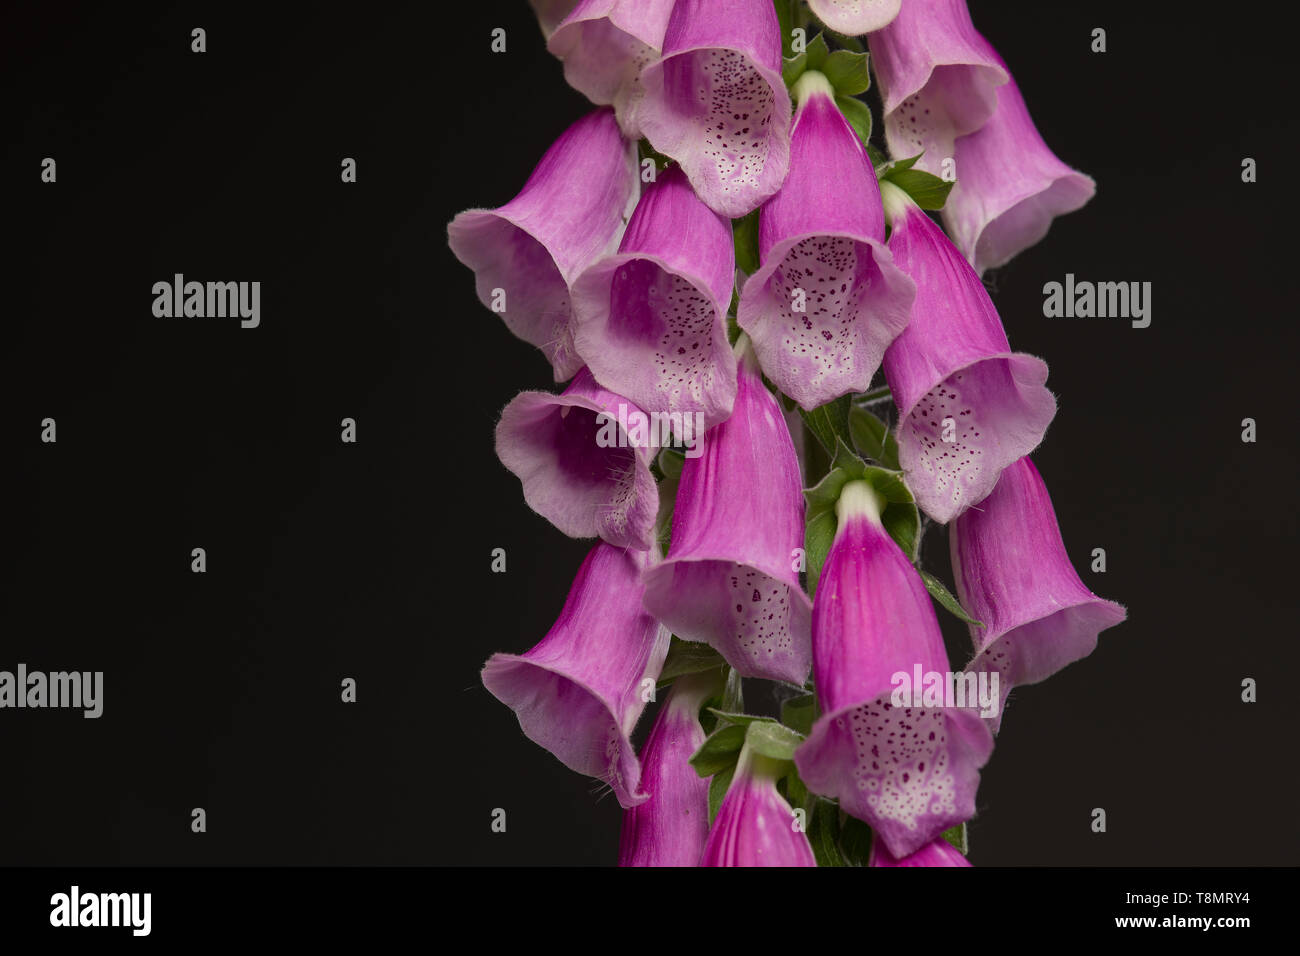 Gros plan d'une usine de la digitale en fleurs rose sur fond noir dans une image horizontale Banque D'Images